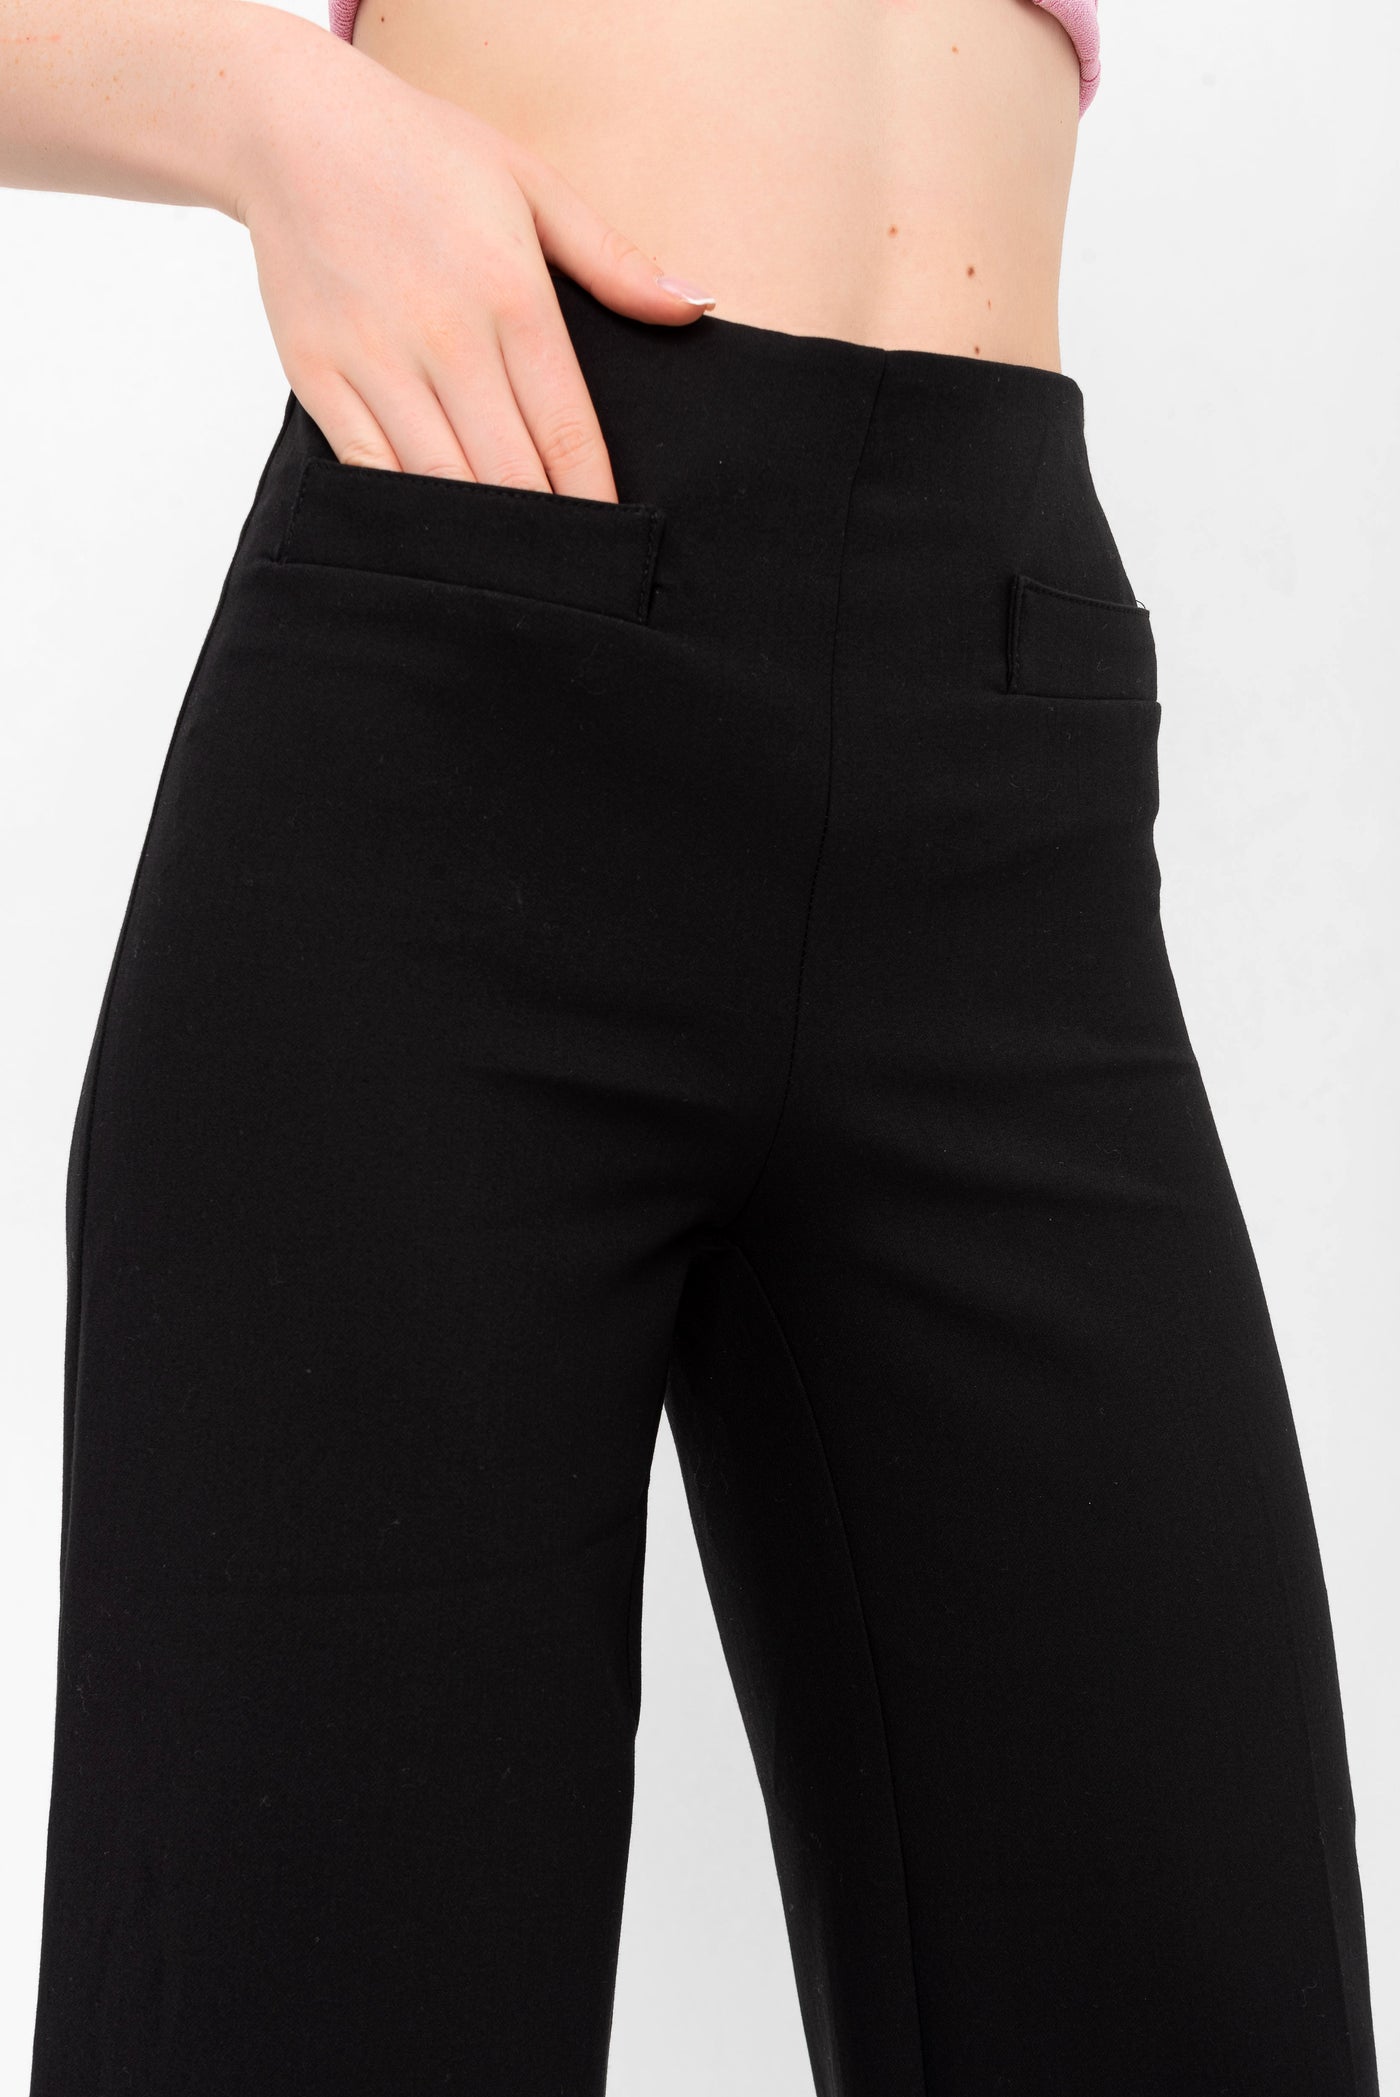 Kristiana High Waisted Pocket Trousers